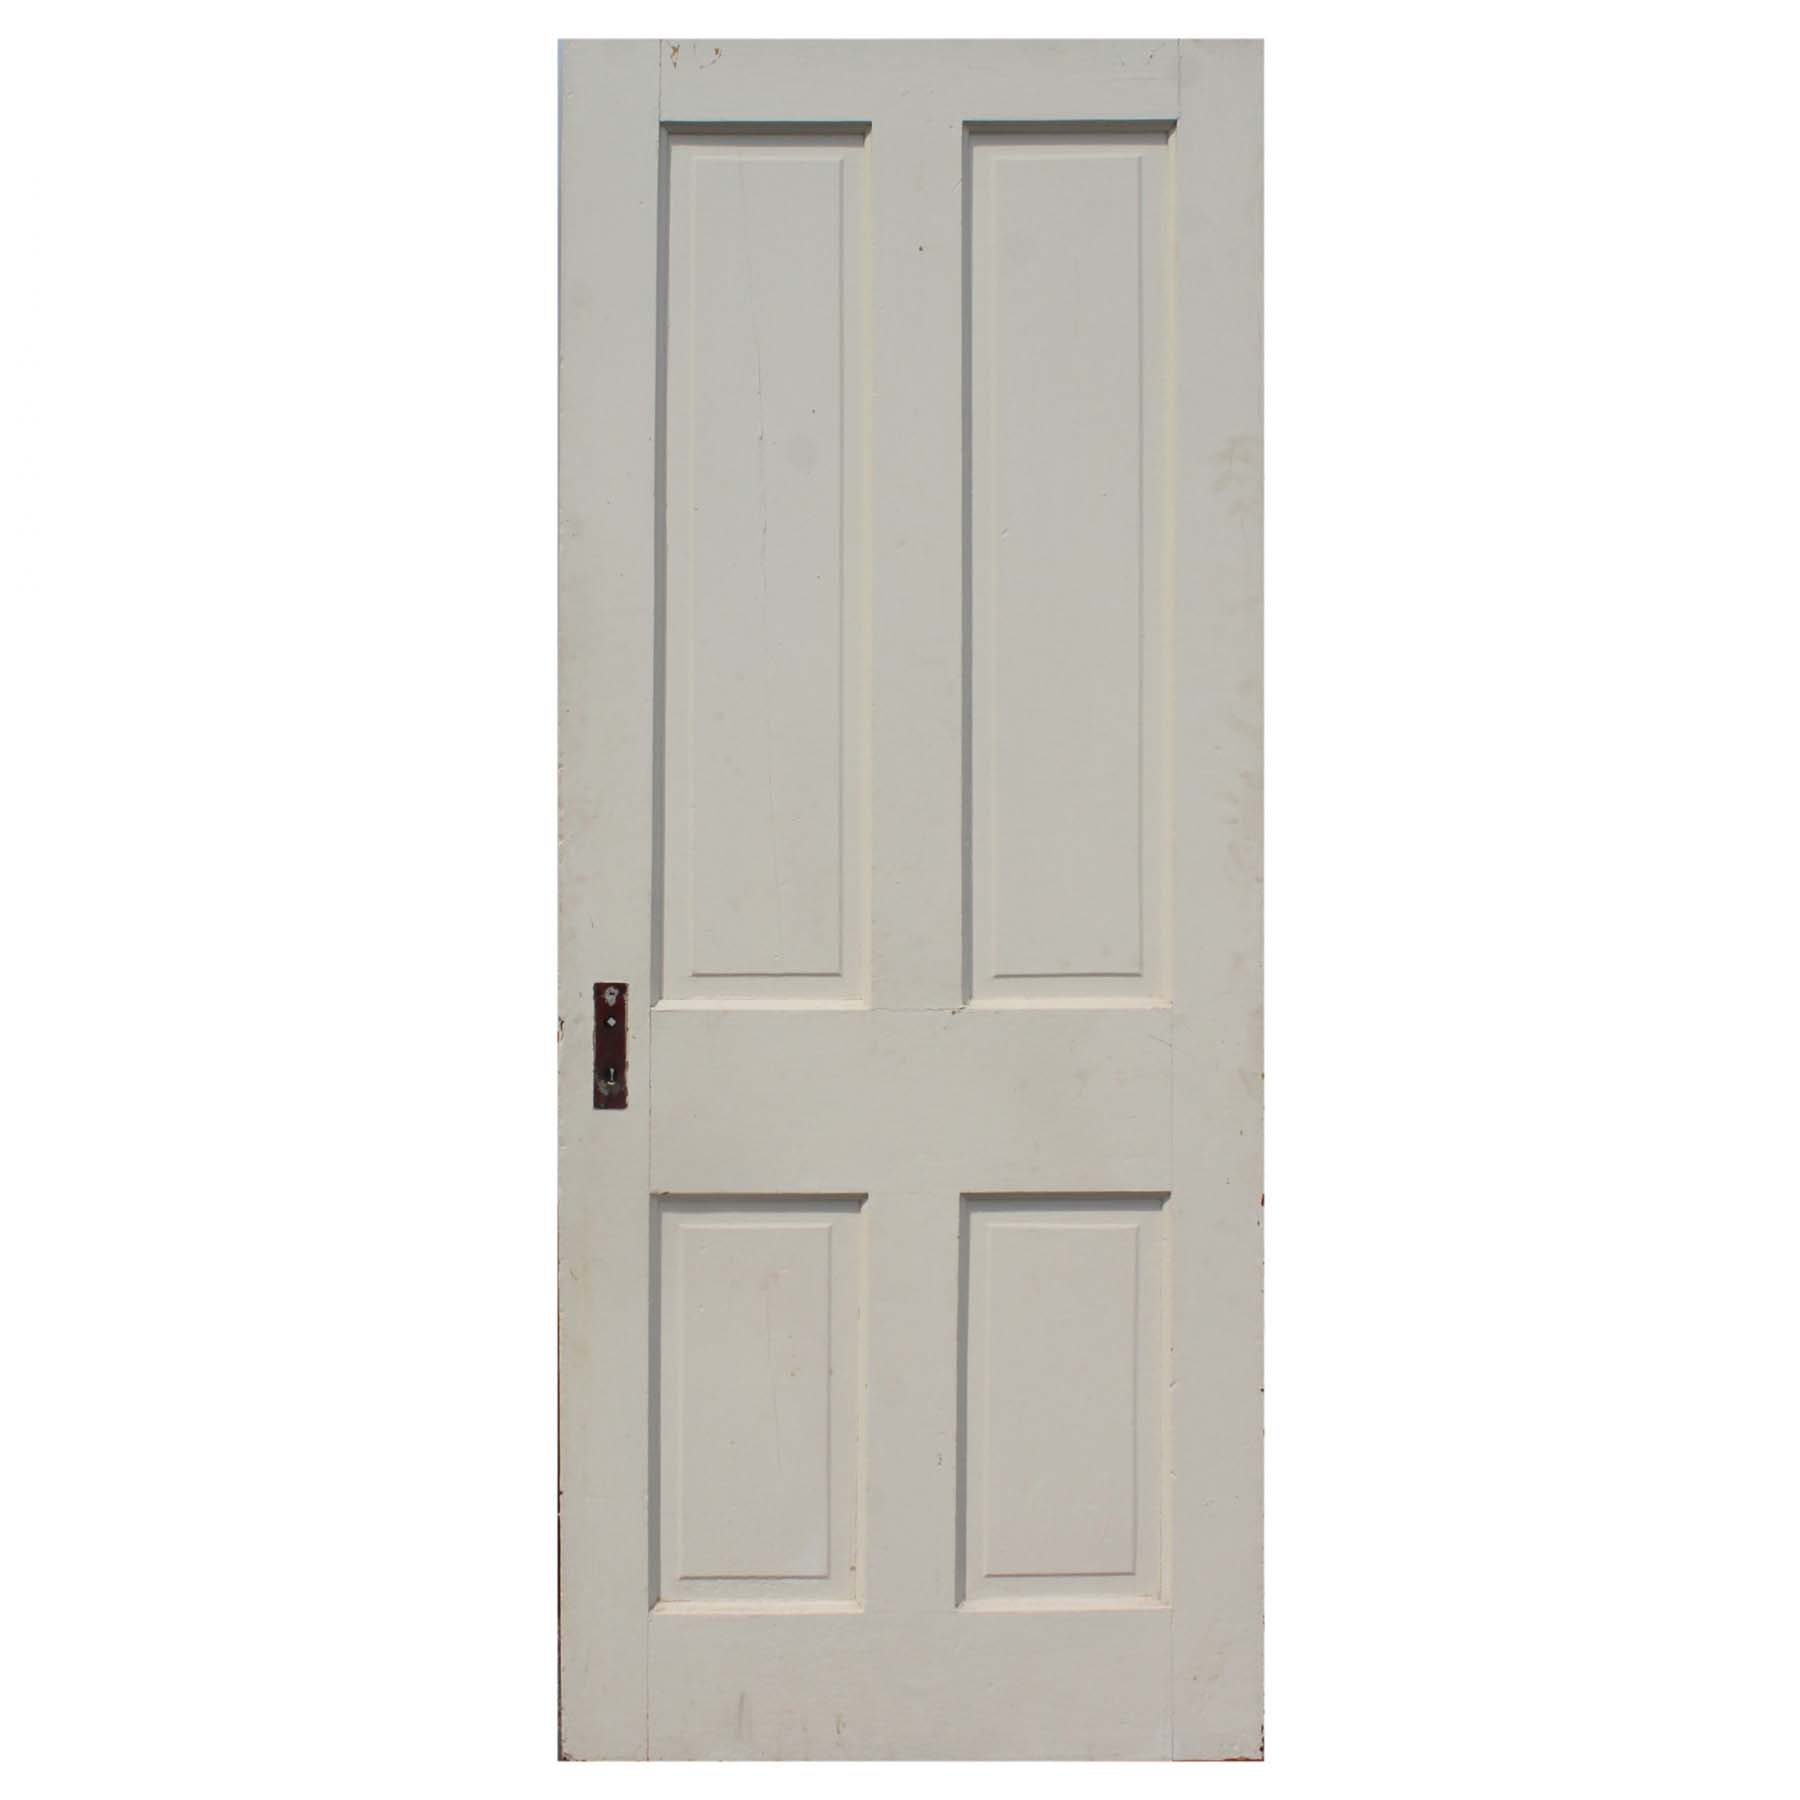 SOLD Reclaimed 32” Four-Panel Solid Wood Door-0